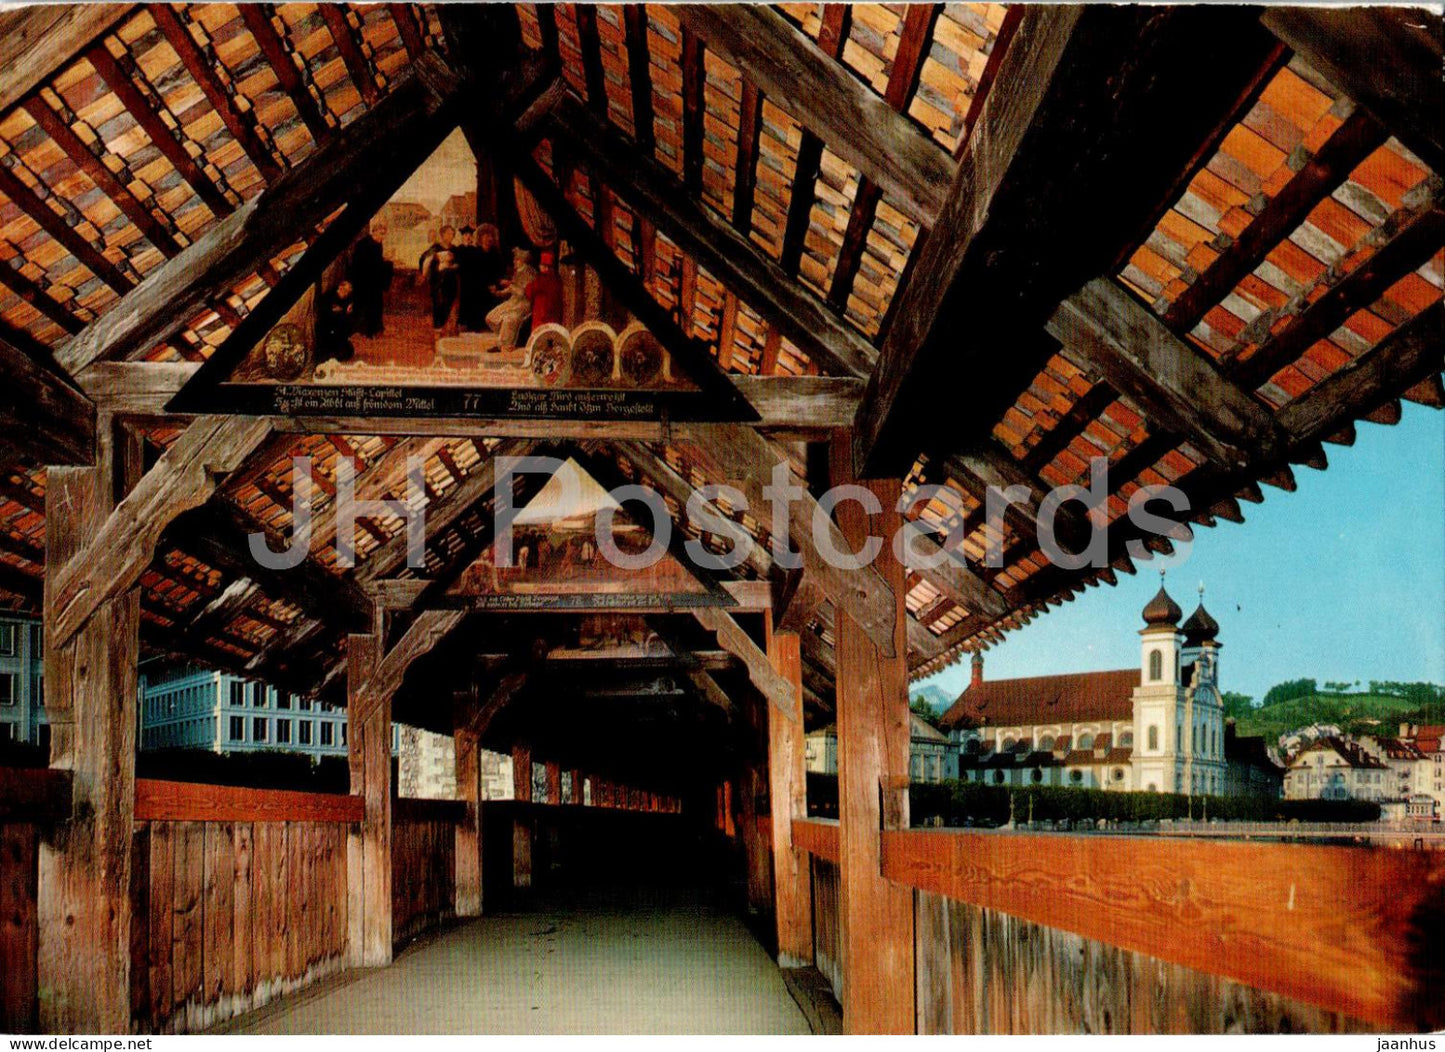 Luzern - Lucerne - Kapellbrucke mit Jesuitenkirche - bridge - 587 - Switzerland - unused - JH Postcards